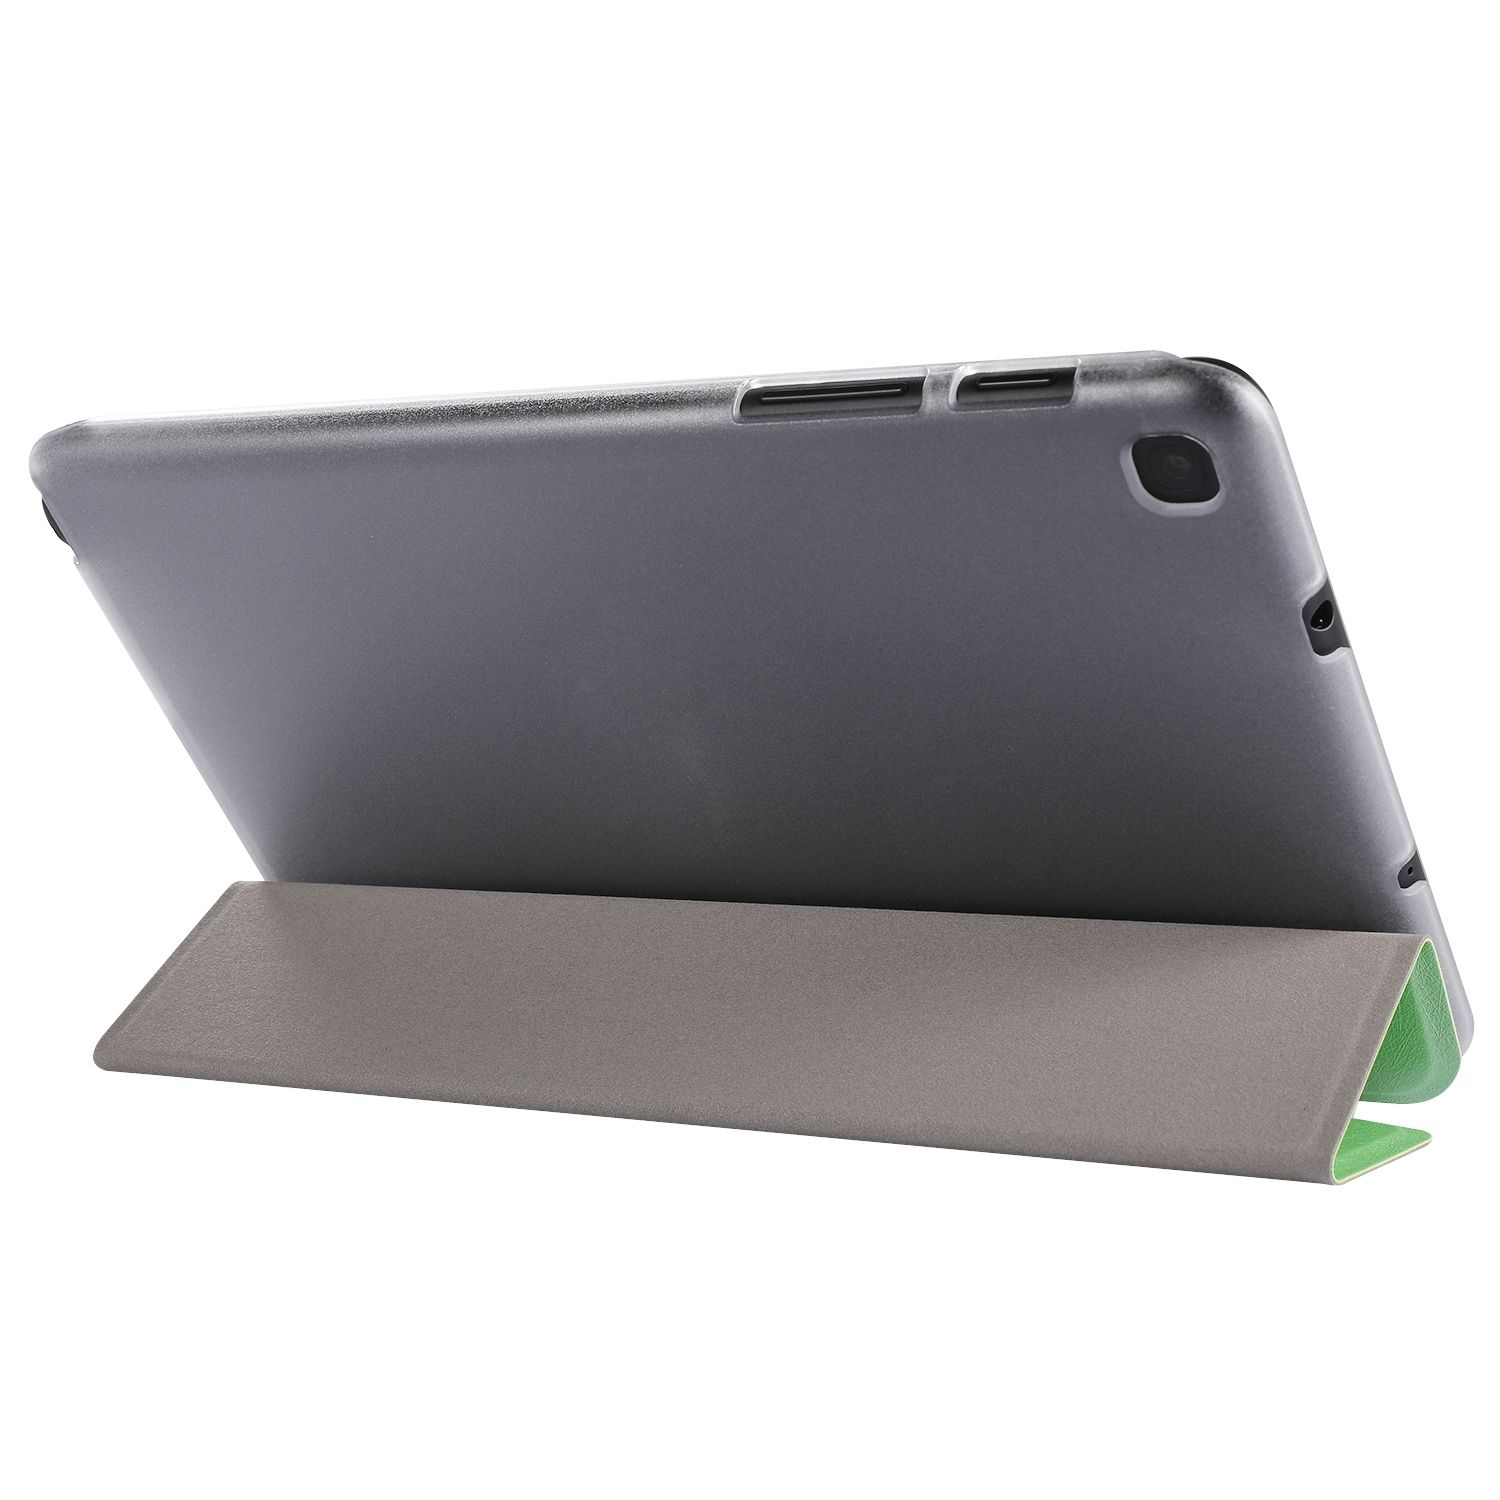 KÖNIG DESIGN für Samsung Kunstleder, Grün Bookcover Tablet-Hülle Tablet-Hülle